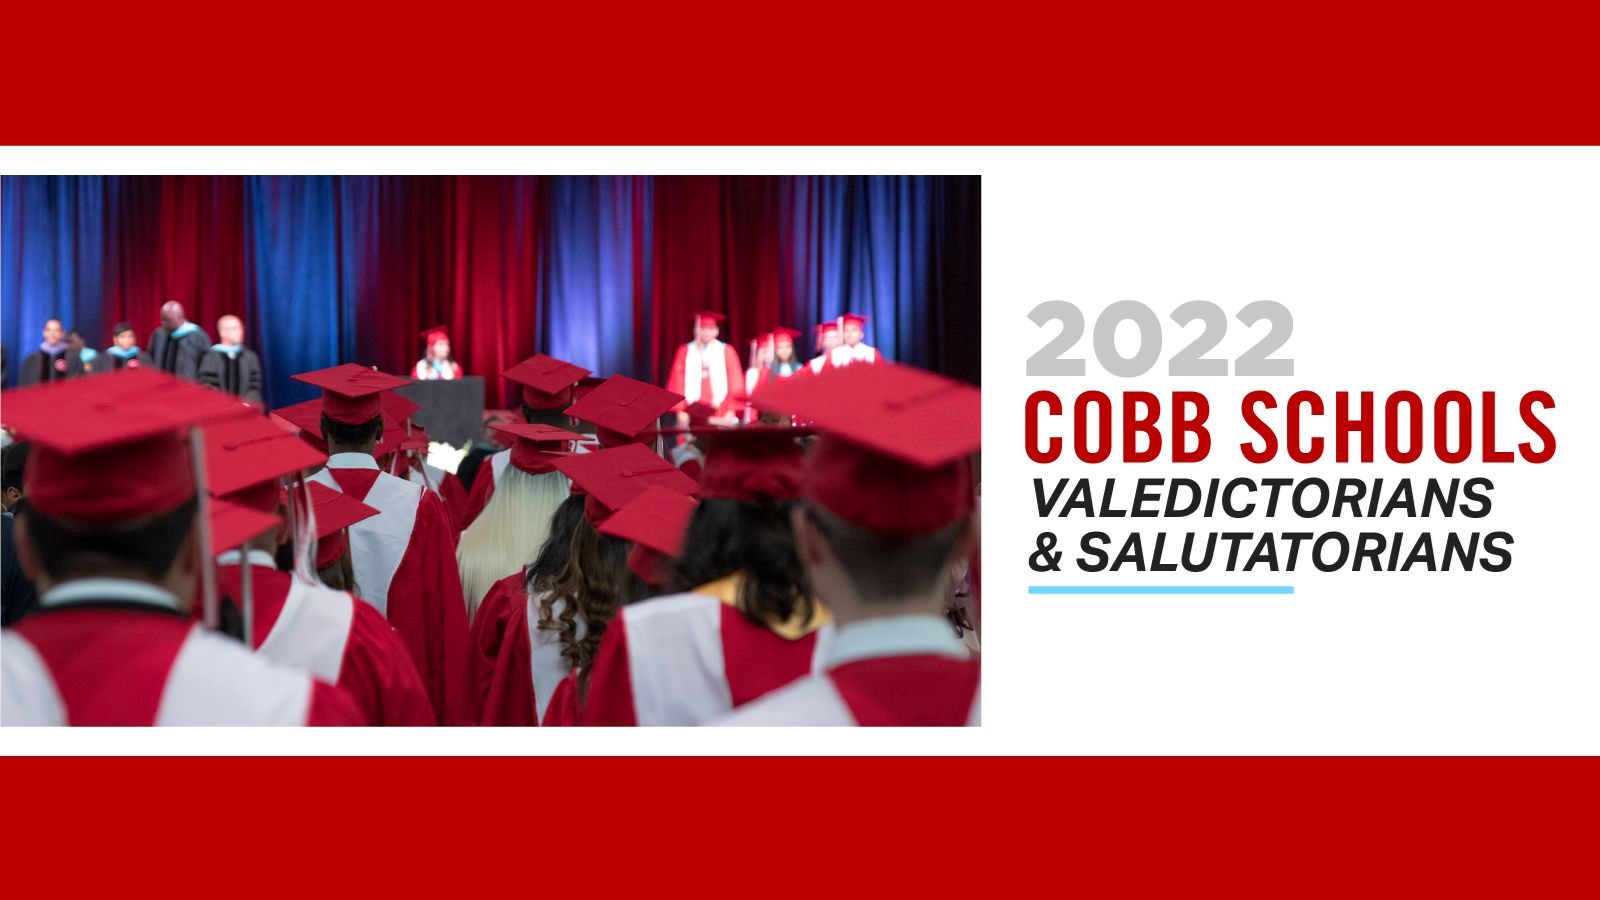 Cobb Valedictorians and Salutatorians 2022